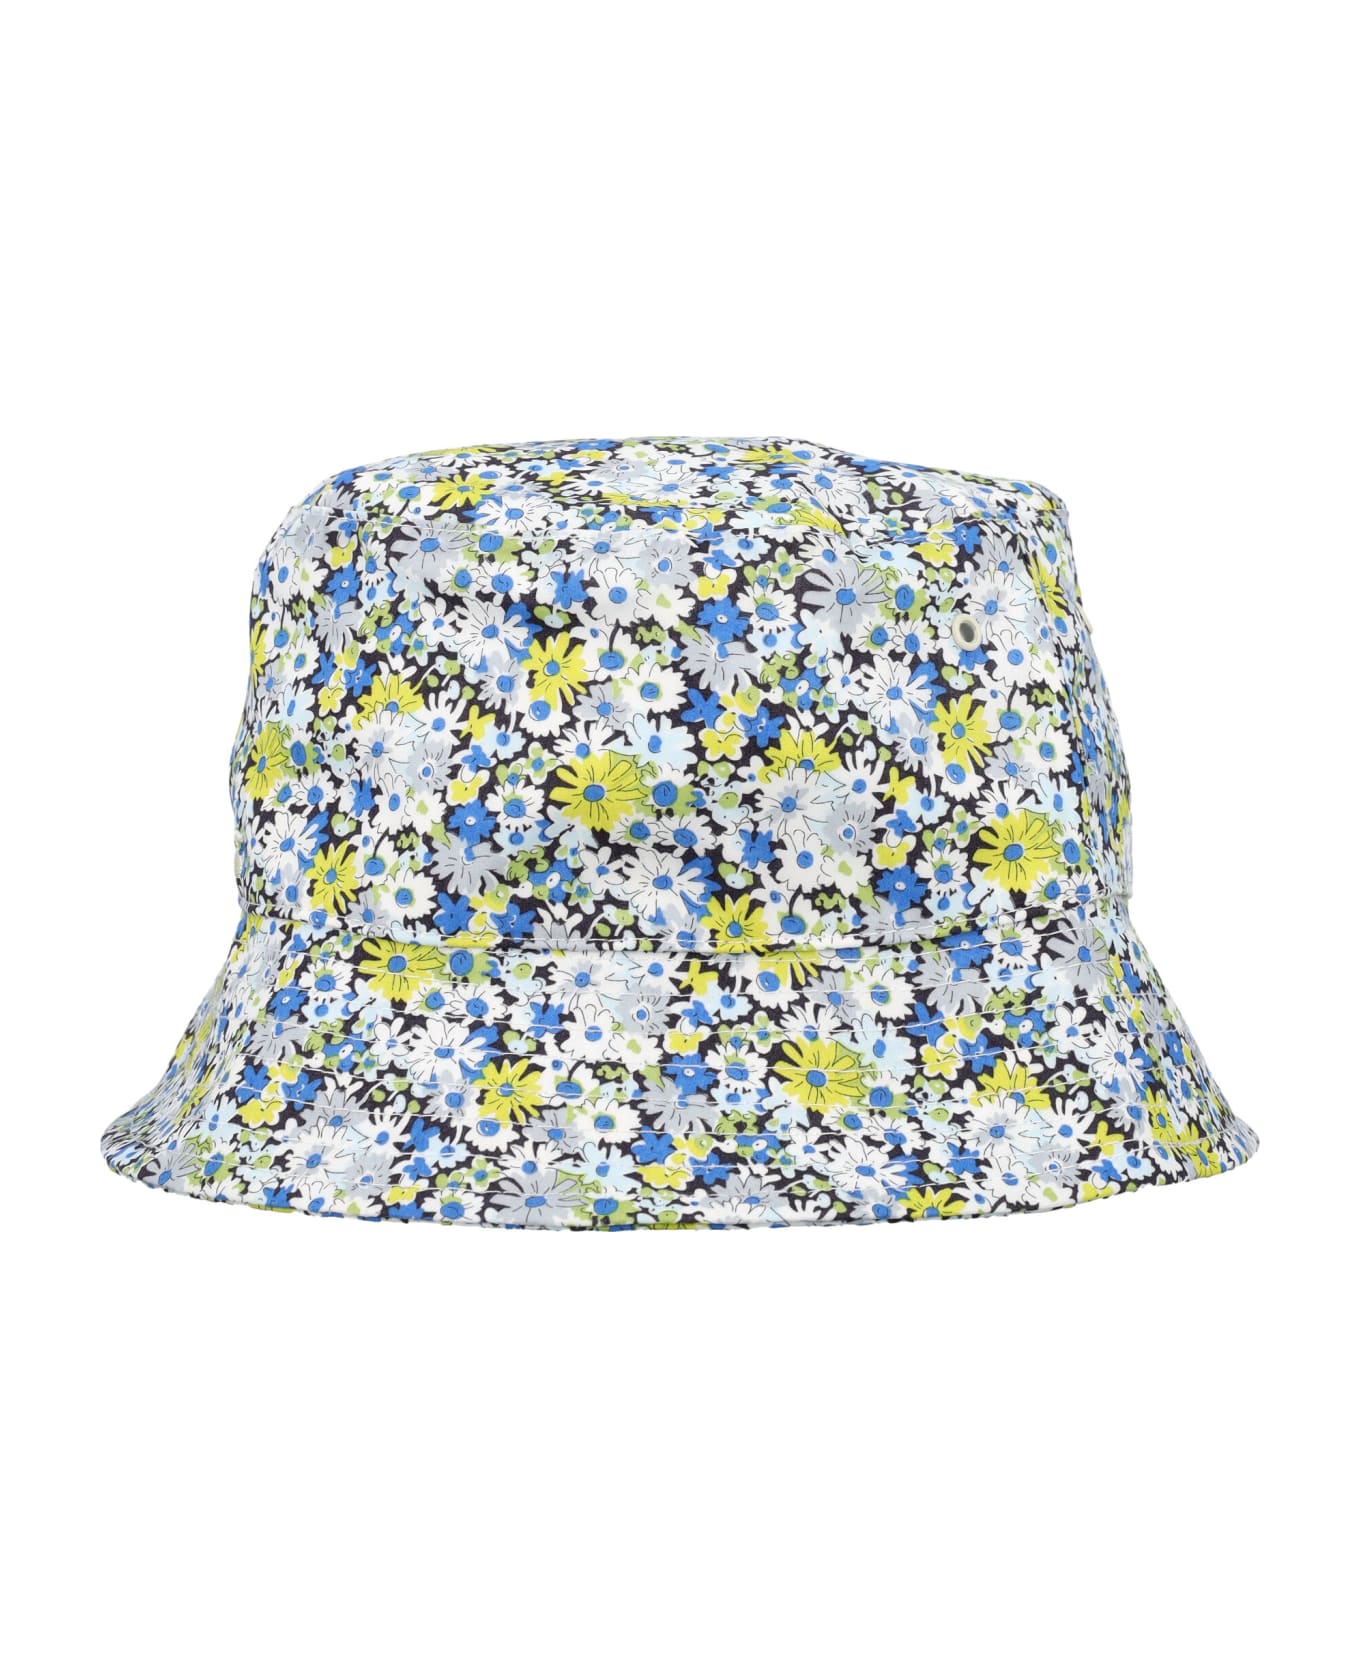 Bonpoint Theana Bucket Hat - FLOWERS BLEU